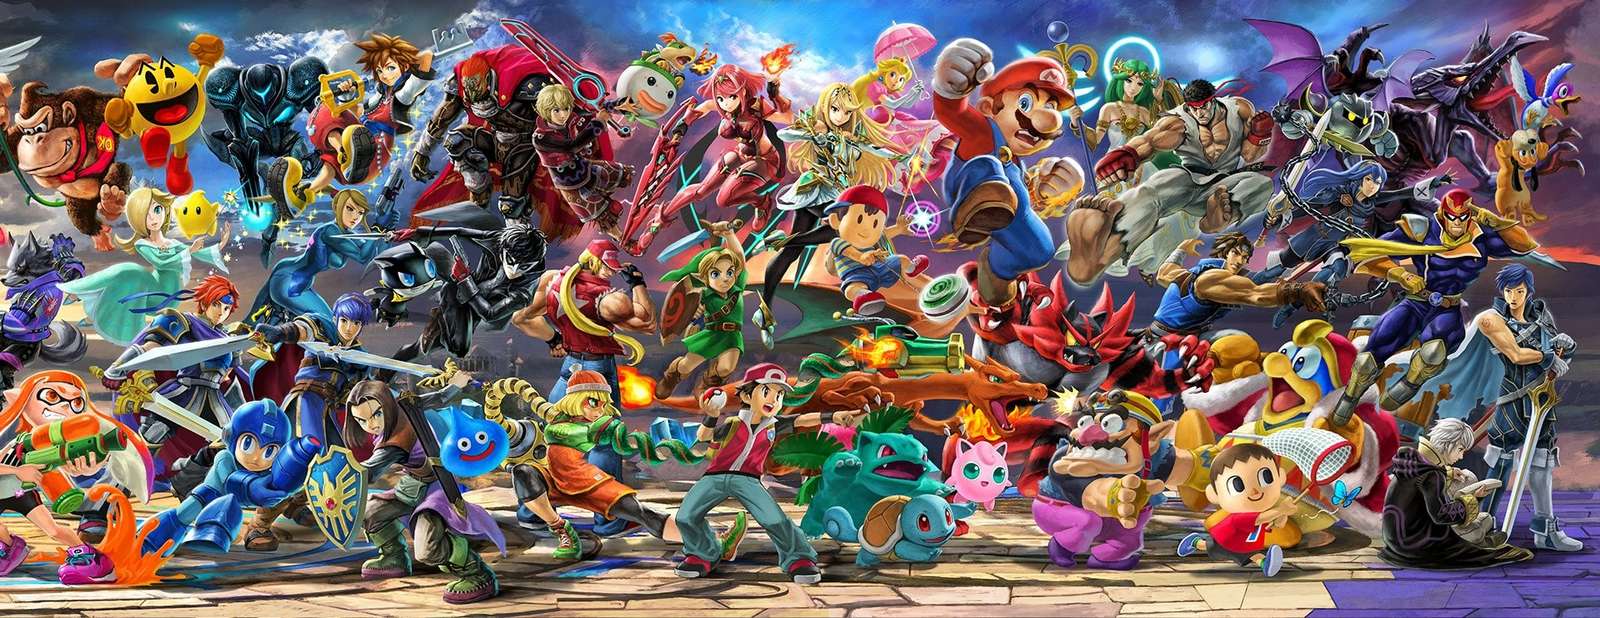 Super Smash Bros Ultimate väggmålning, eller hur pussel på nätet